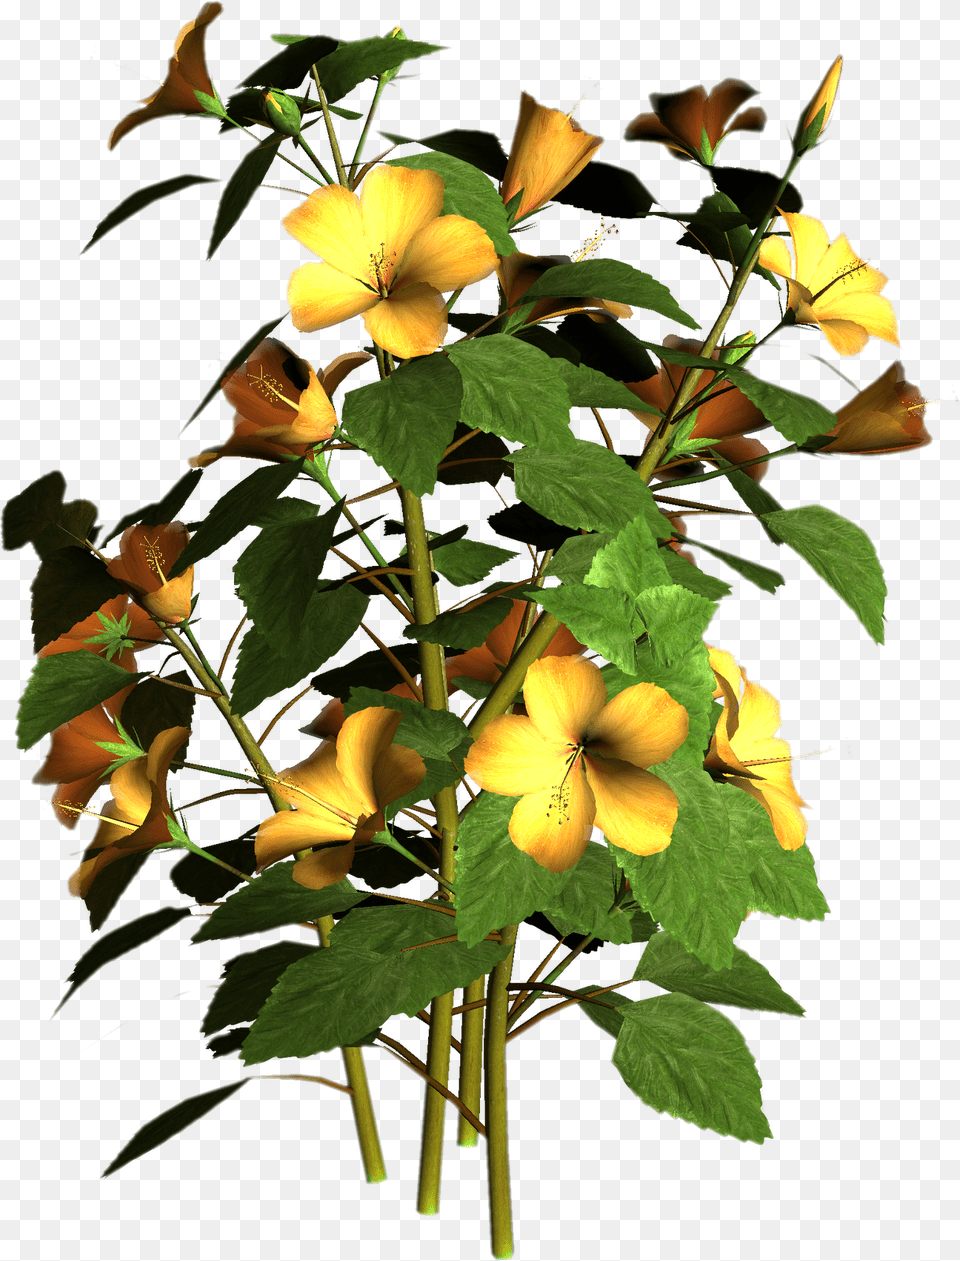 Flower Plant, Acanthaceae, Leaf, Petal, Geranium Free Transparent Png